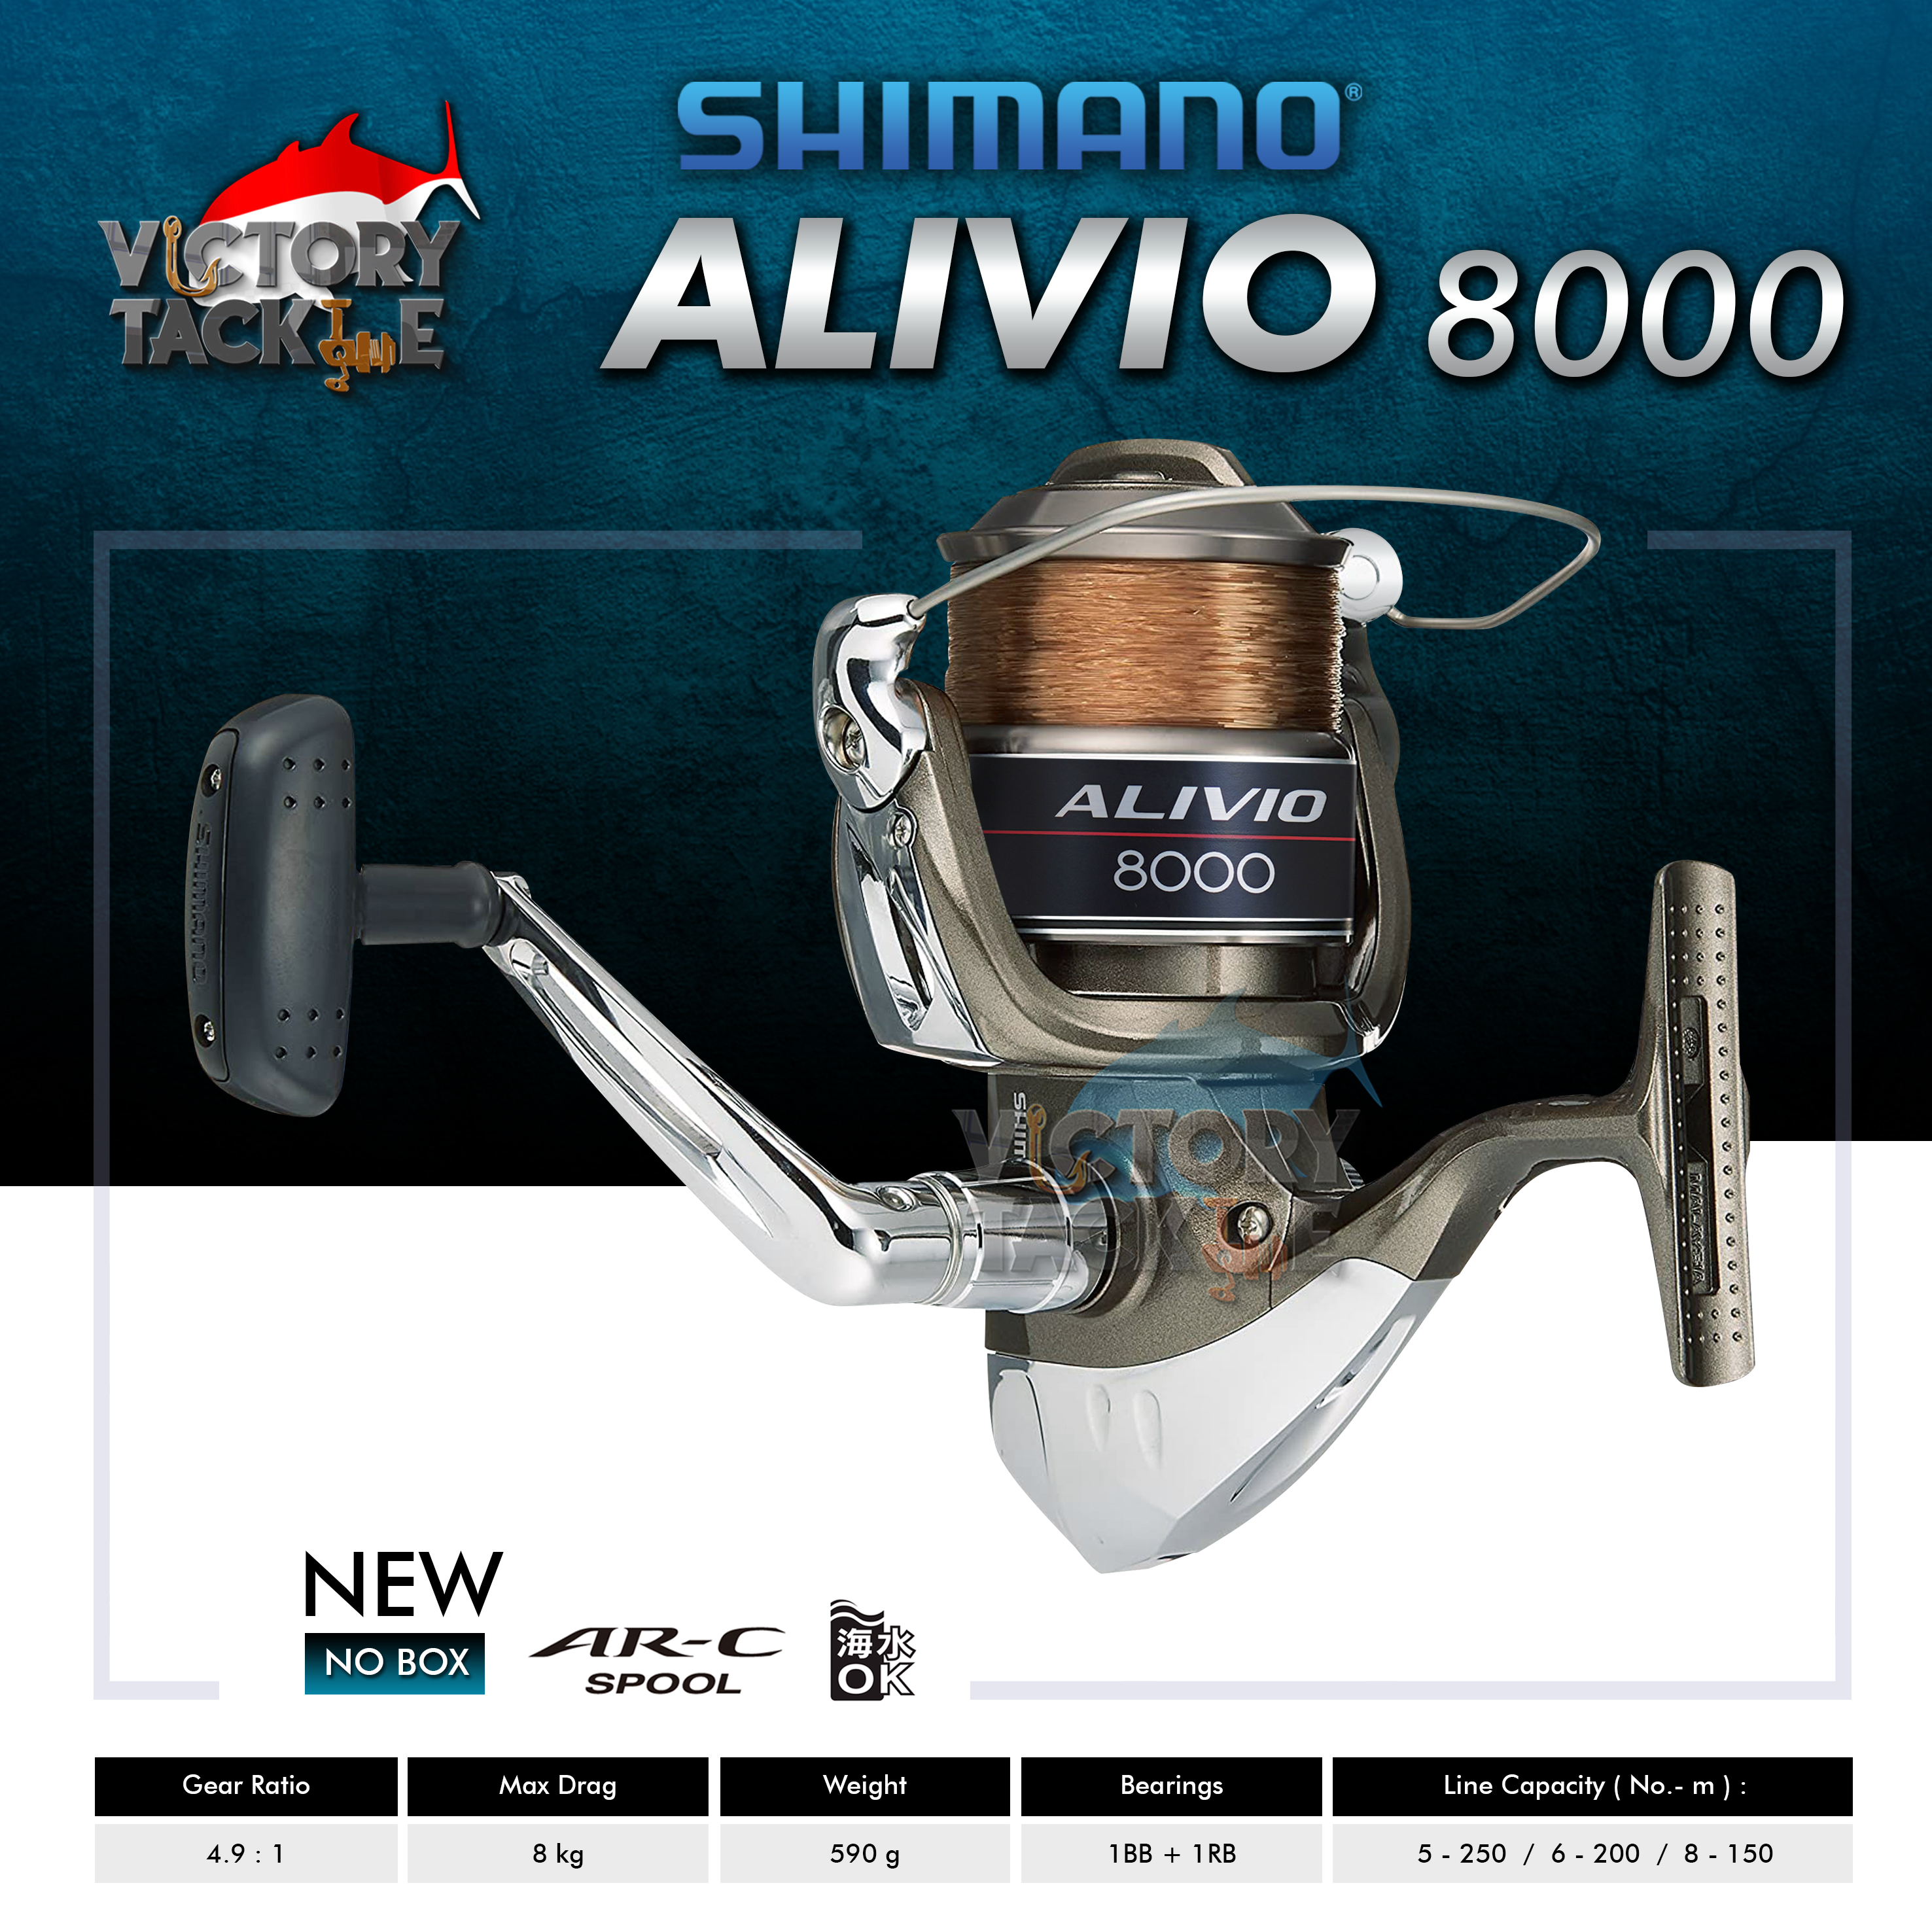 Jual Reel Shimano 6000 Alivio Original Murah - Harga Diskon Maret